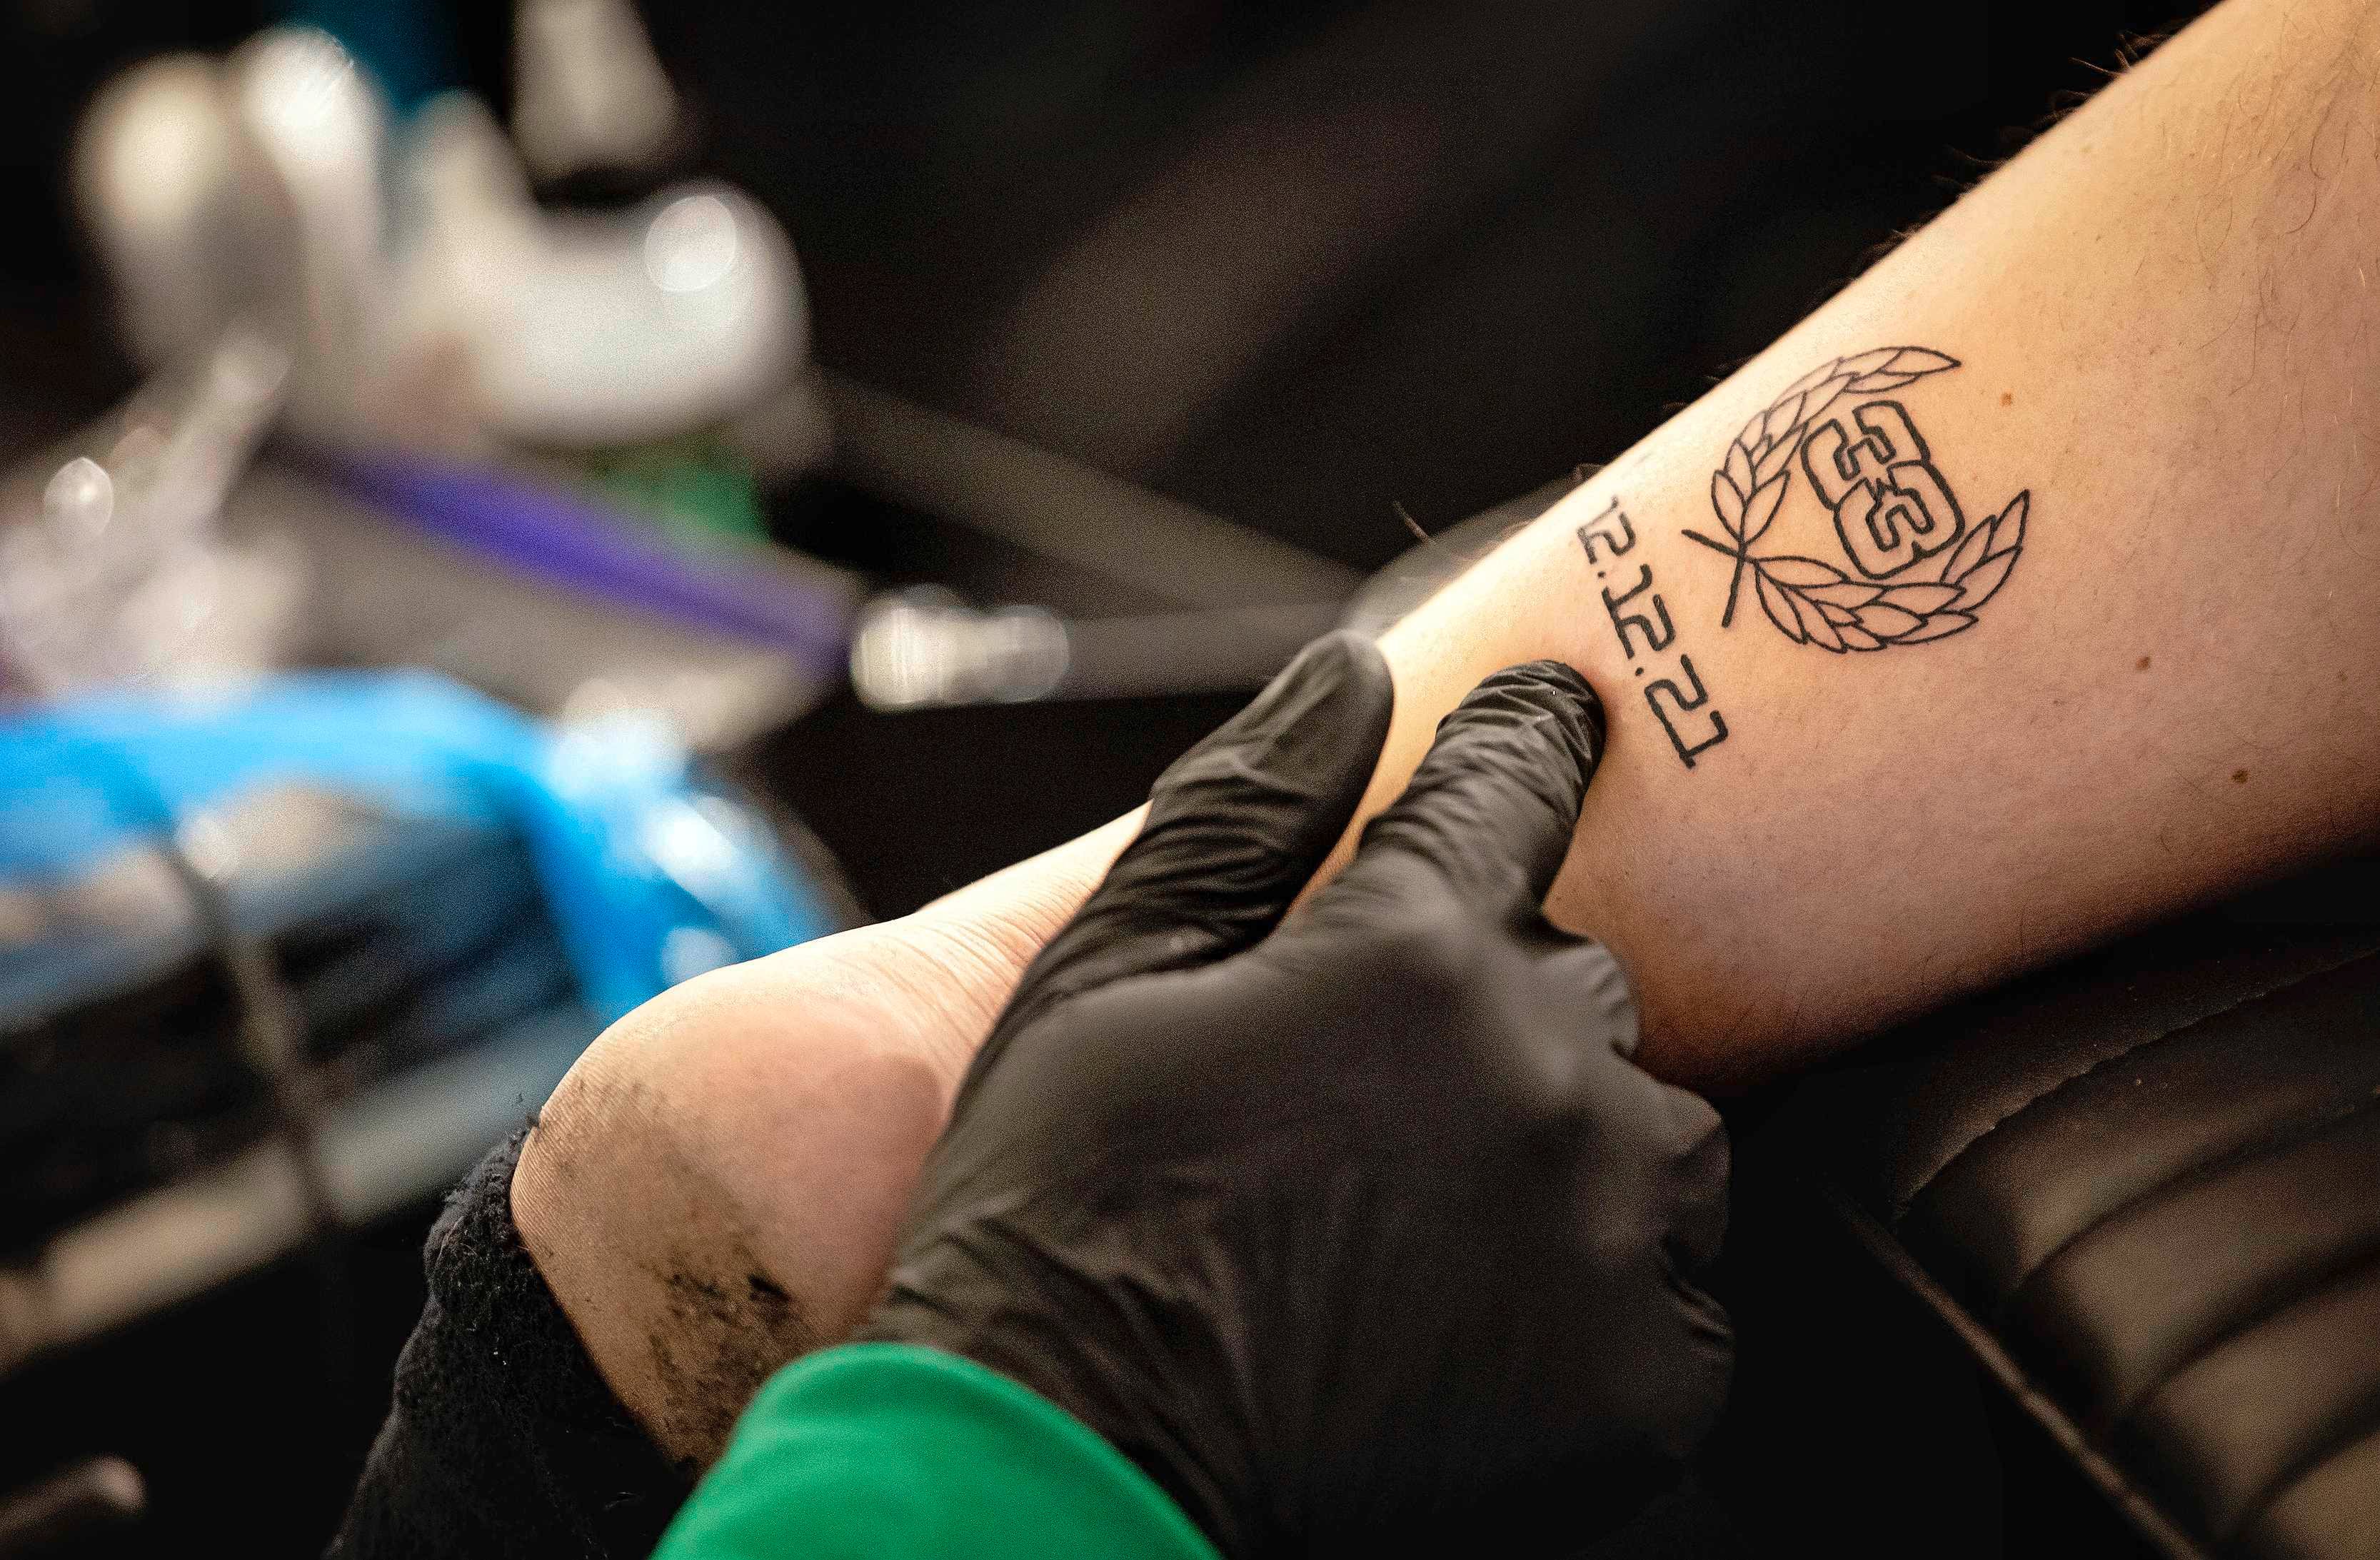 inktpigmenten voor tattoos mogen vanaf 2023 niet meer gebruikt | Binnenland